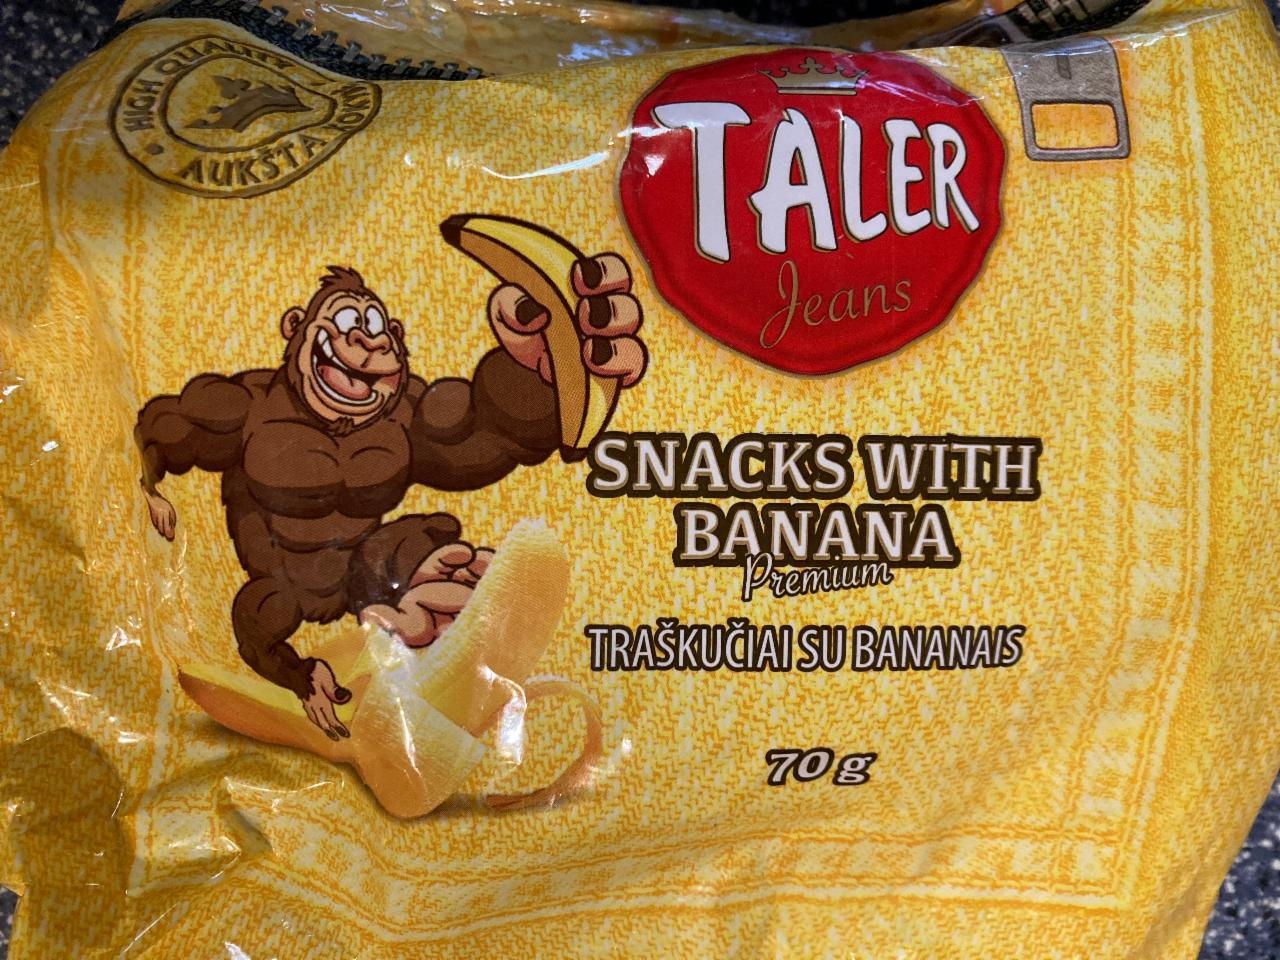 Fotografie - Snacks with banana Premium Taler Jeans